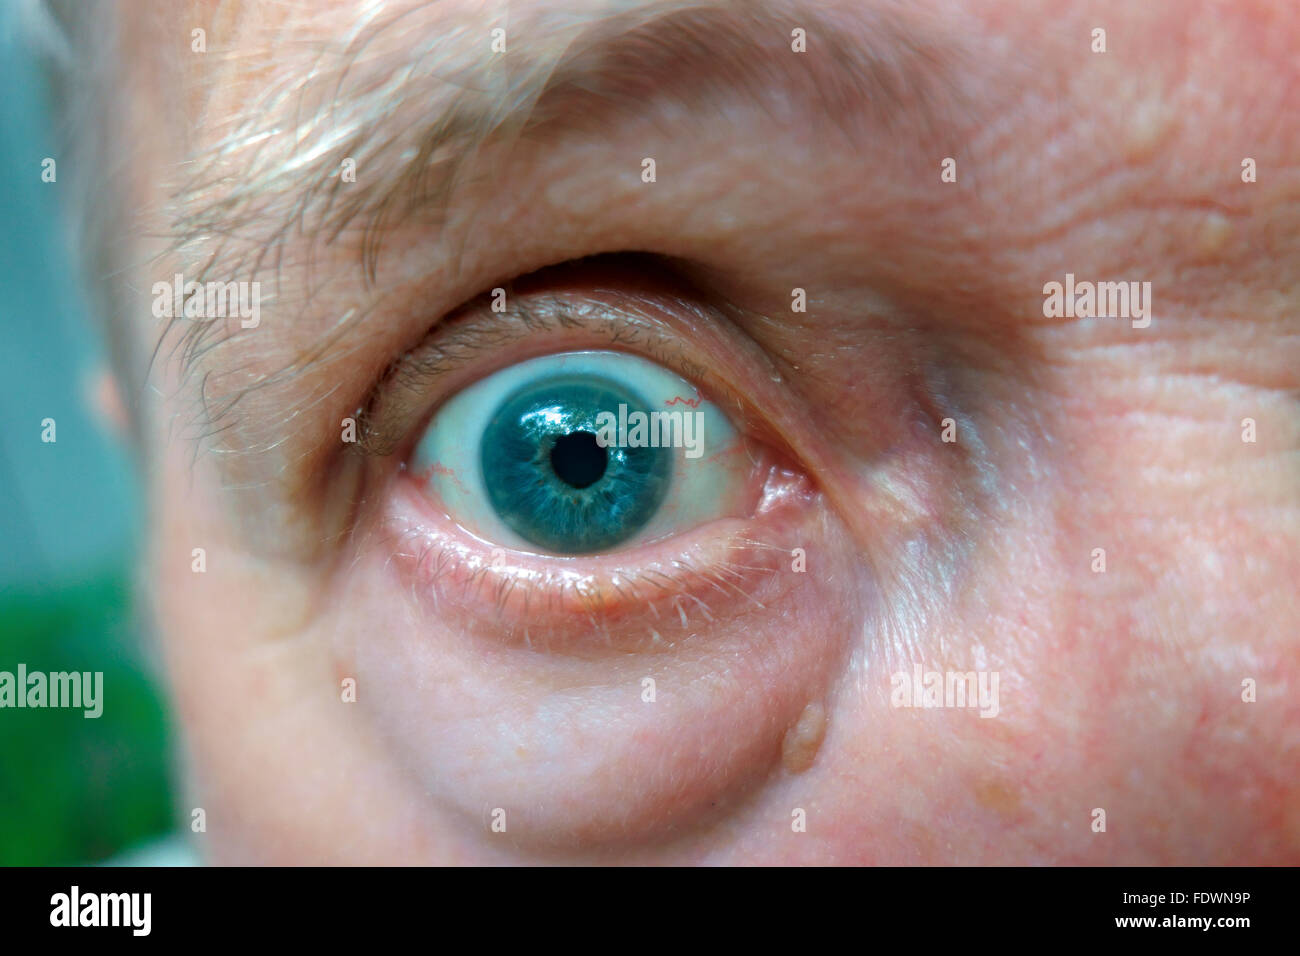 an eyeball and blue eye on a man's face Stock Photo